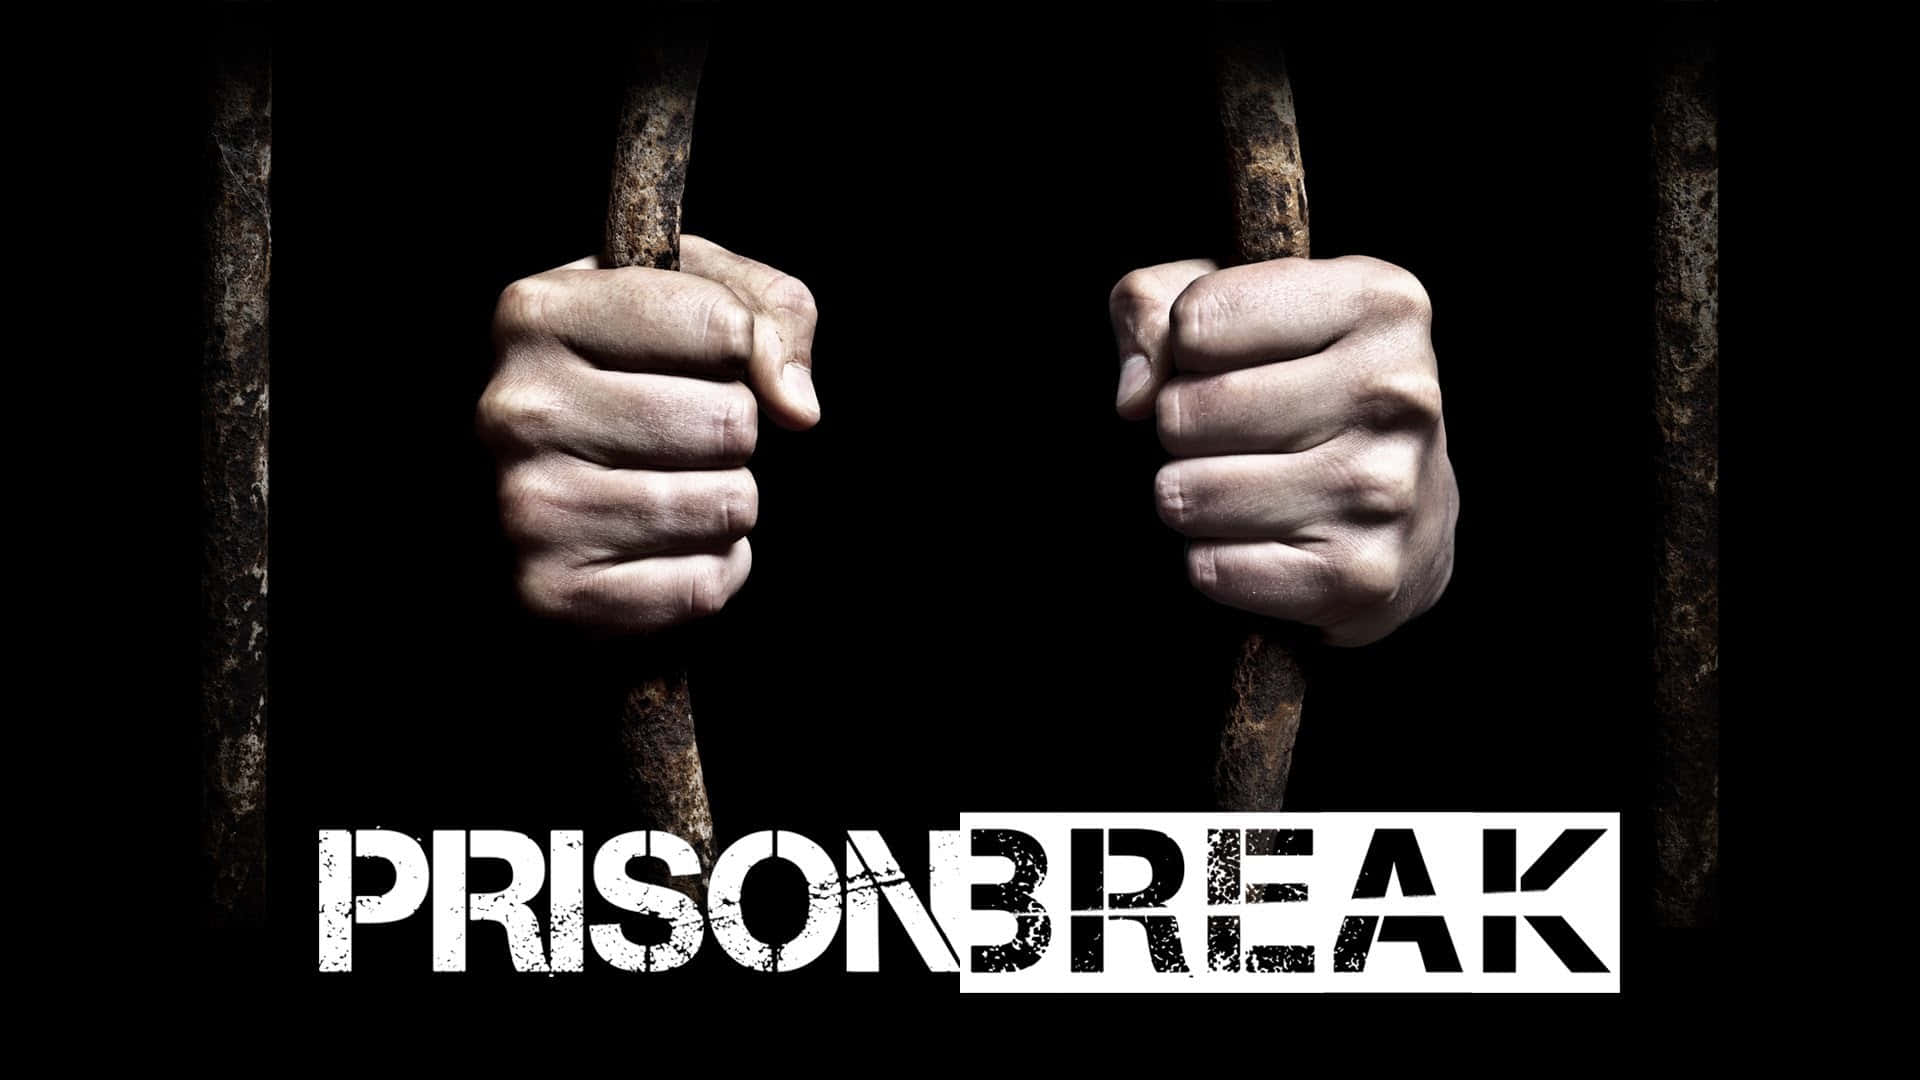 Free Prison Break Wallpaper Downloads, [100+] Prison Break Wallpapers for  FREE 